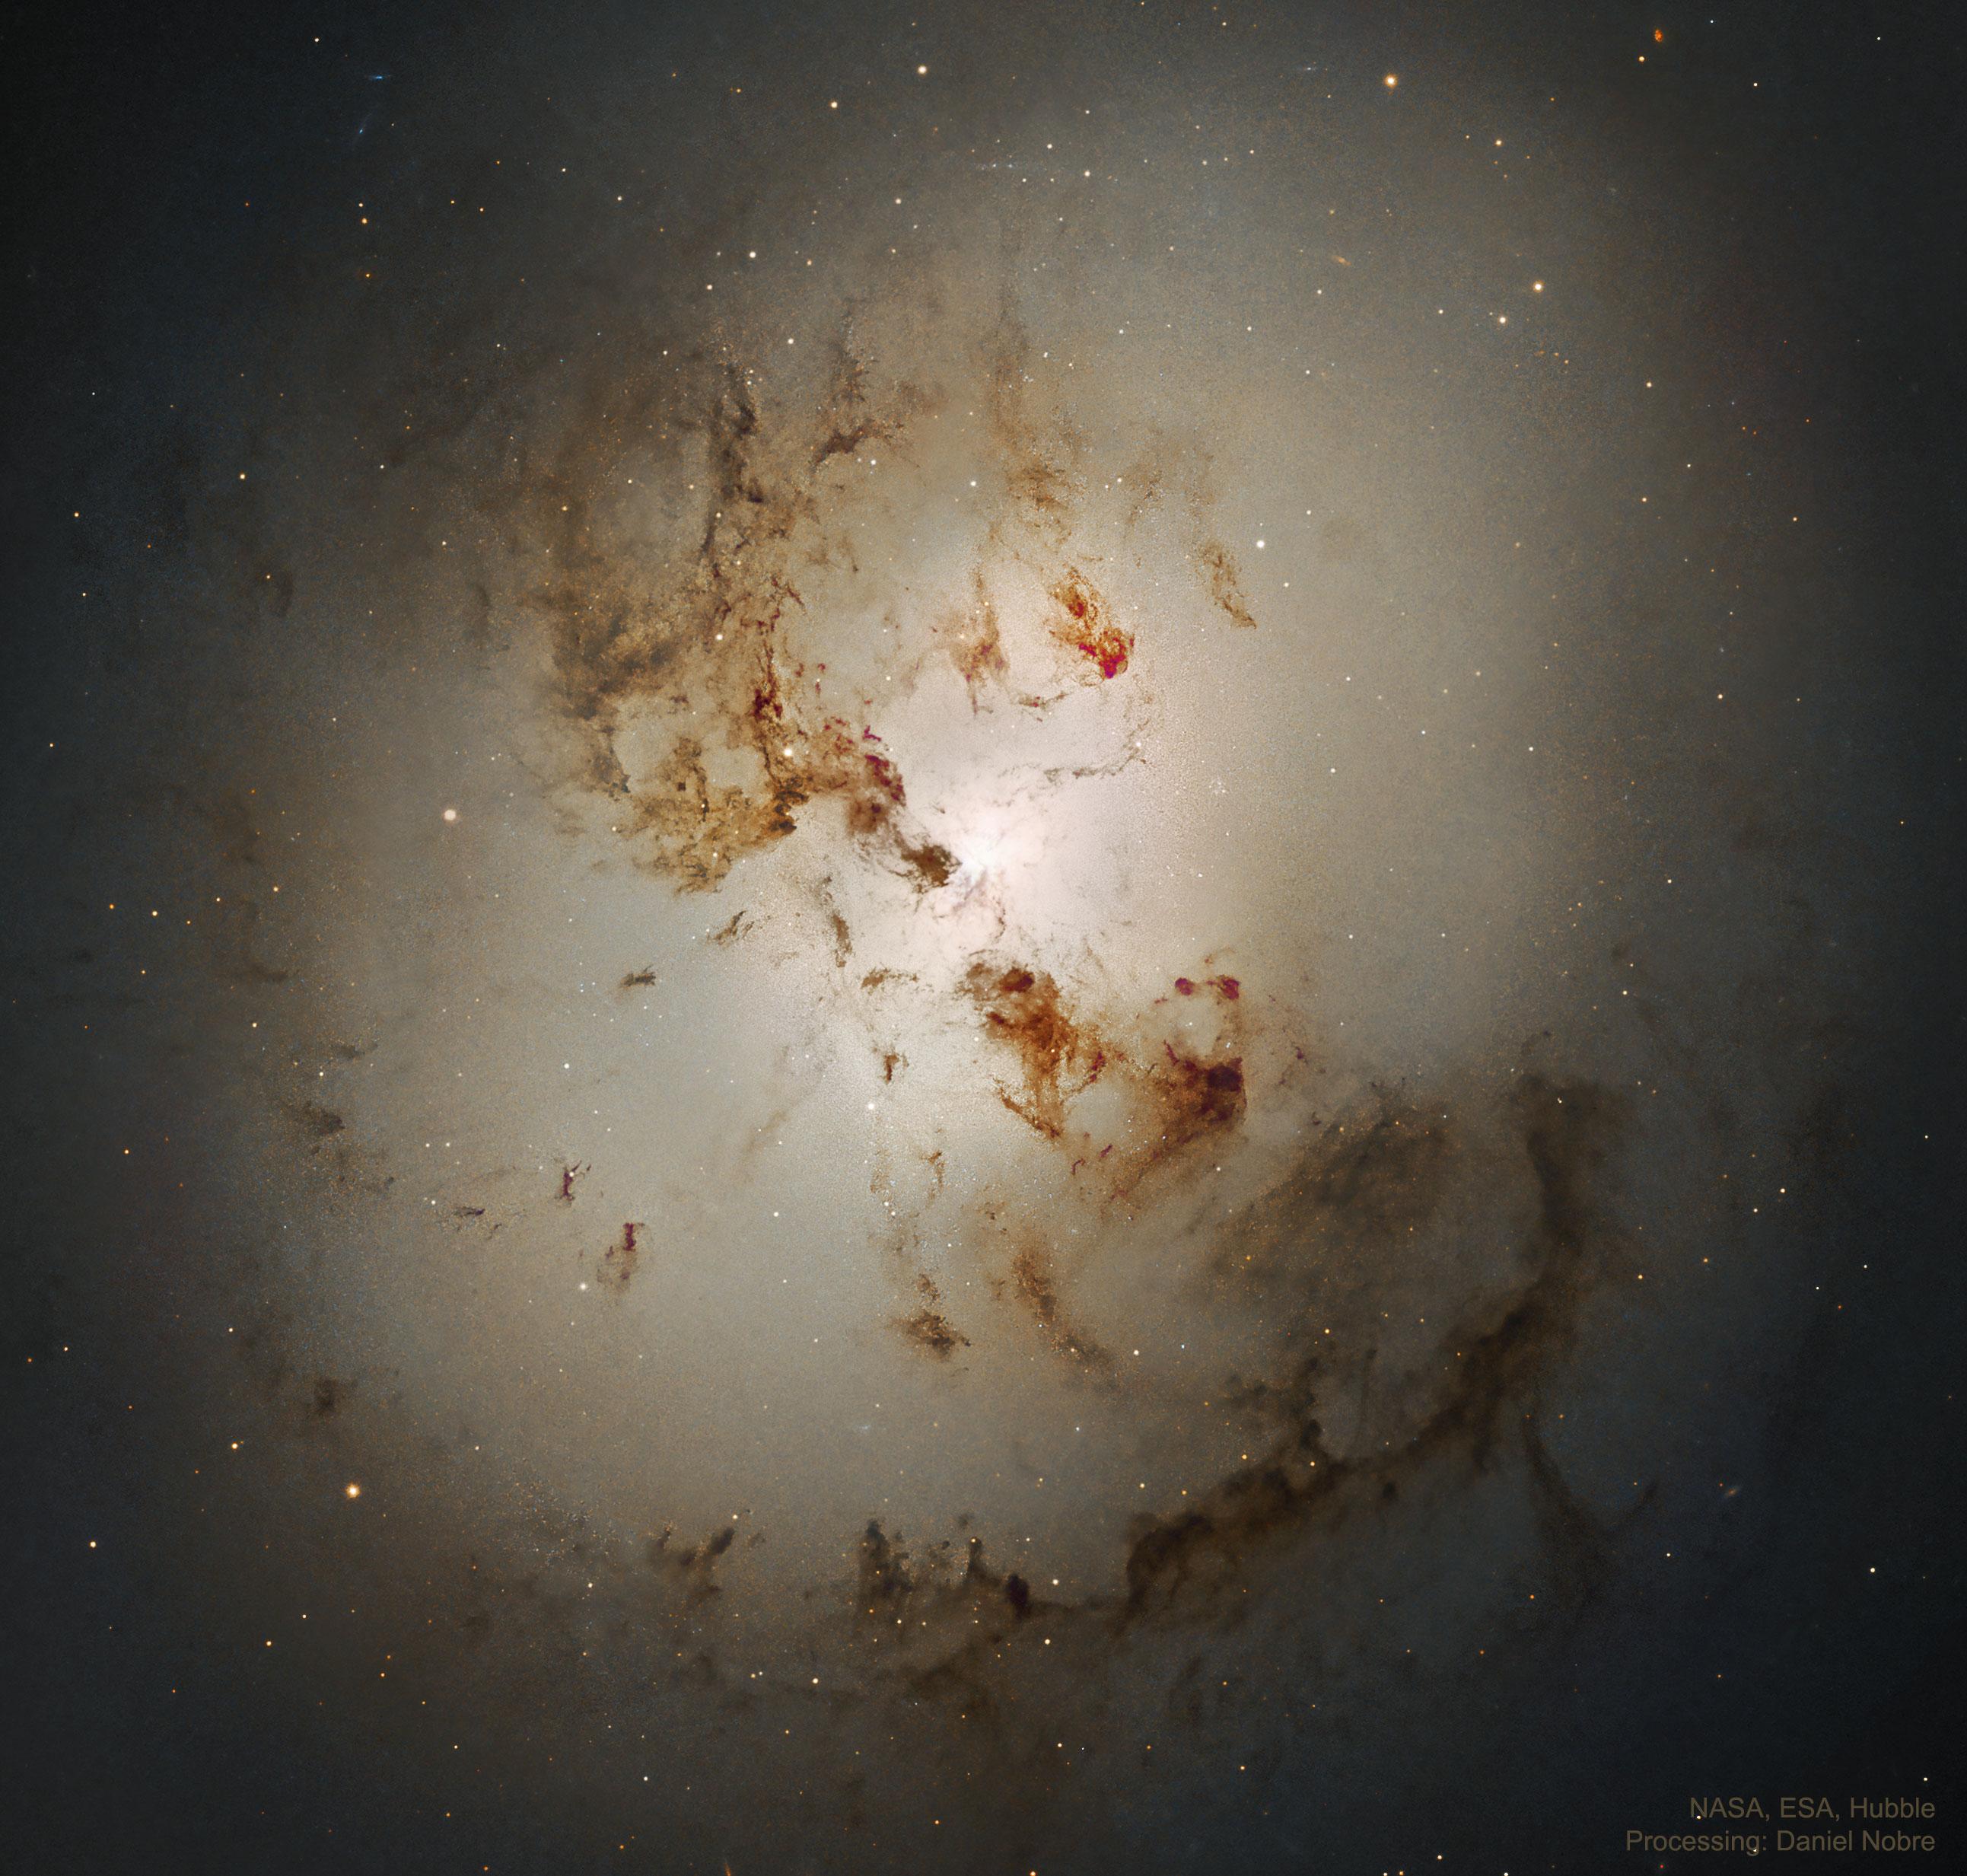 صورة للمجرة الحلزونية إن‌جي‌سي 1316 تُظهر نواةً صفراء وحولها خليطٌ من النجوم والغبار والغاز يظهر بشكل شبه حلزوني حول النواة المغبرة. تظهر في الصورة كذلك عقد وممرات غبار داكنة بارزة.